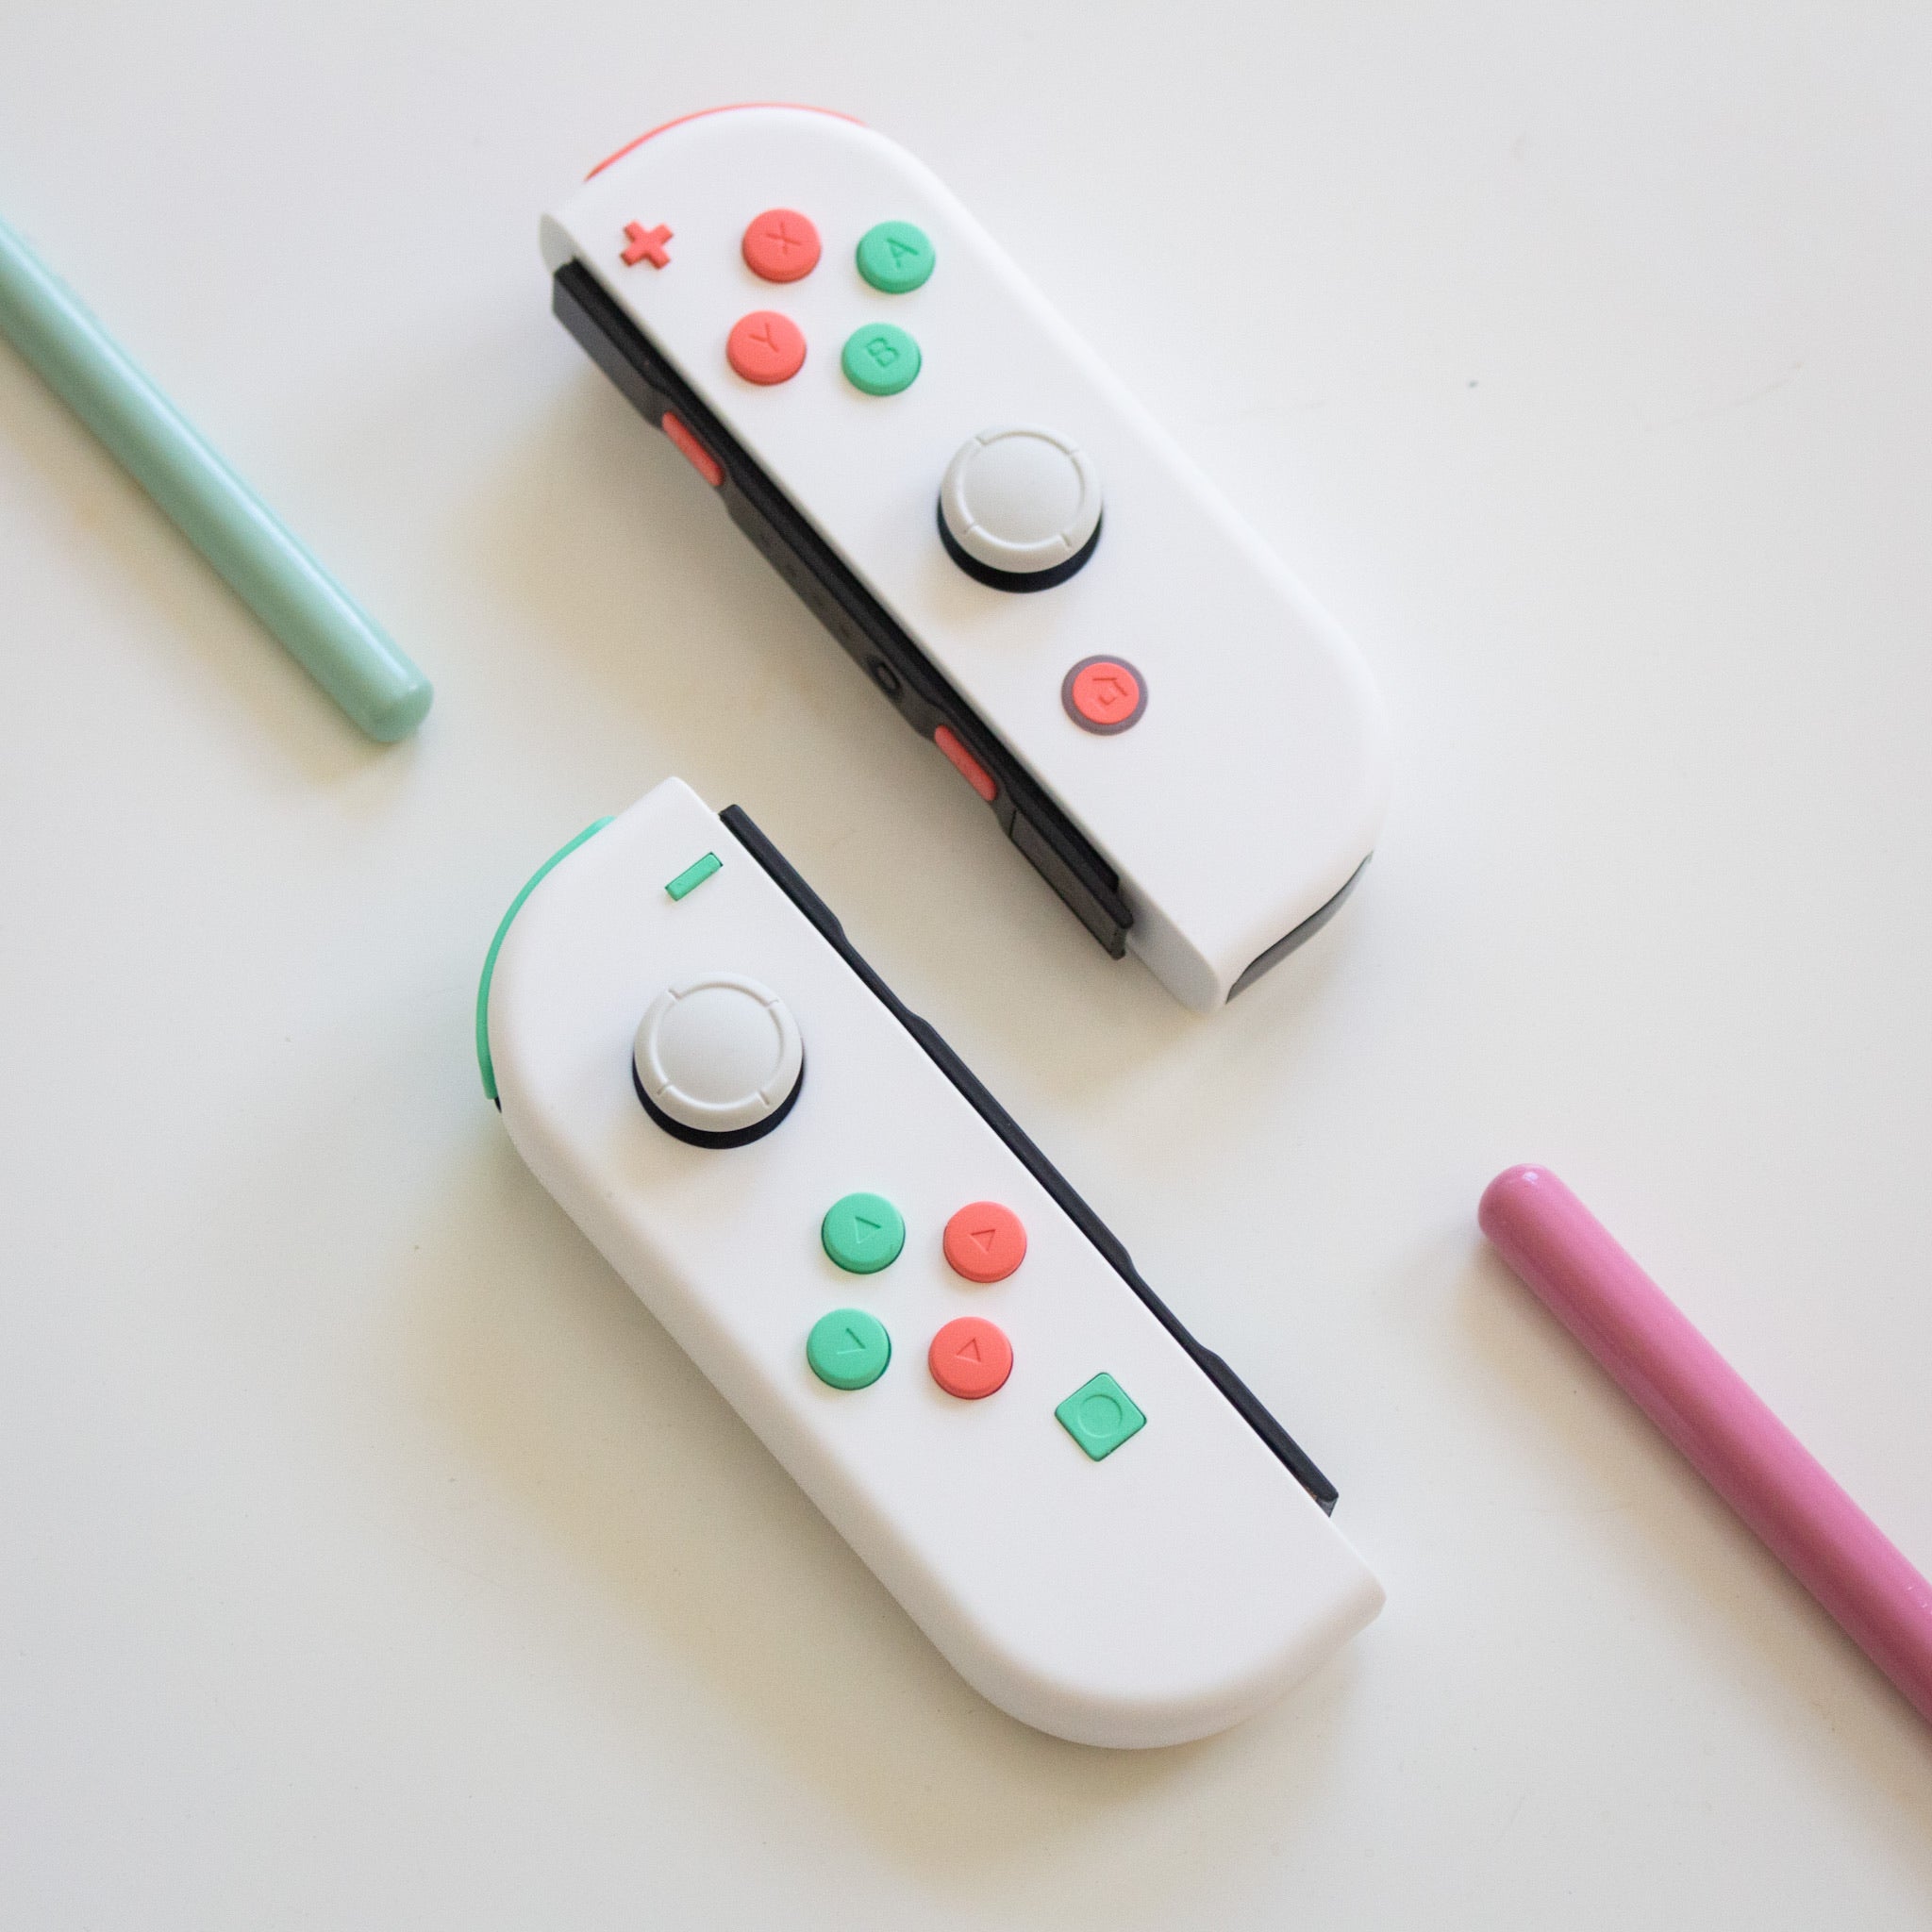 Design Your Own Joy Cons - Custom JoyCon Controller for Nintendo